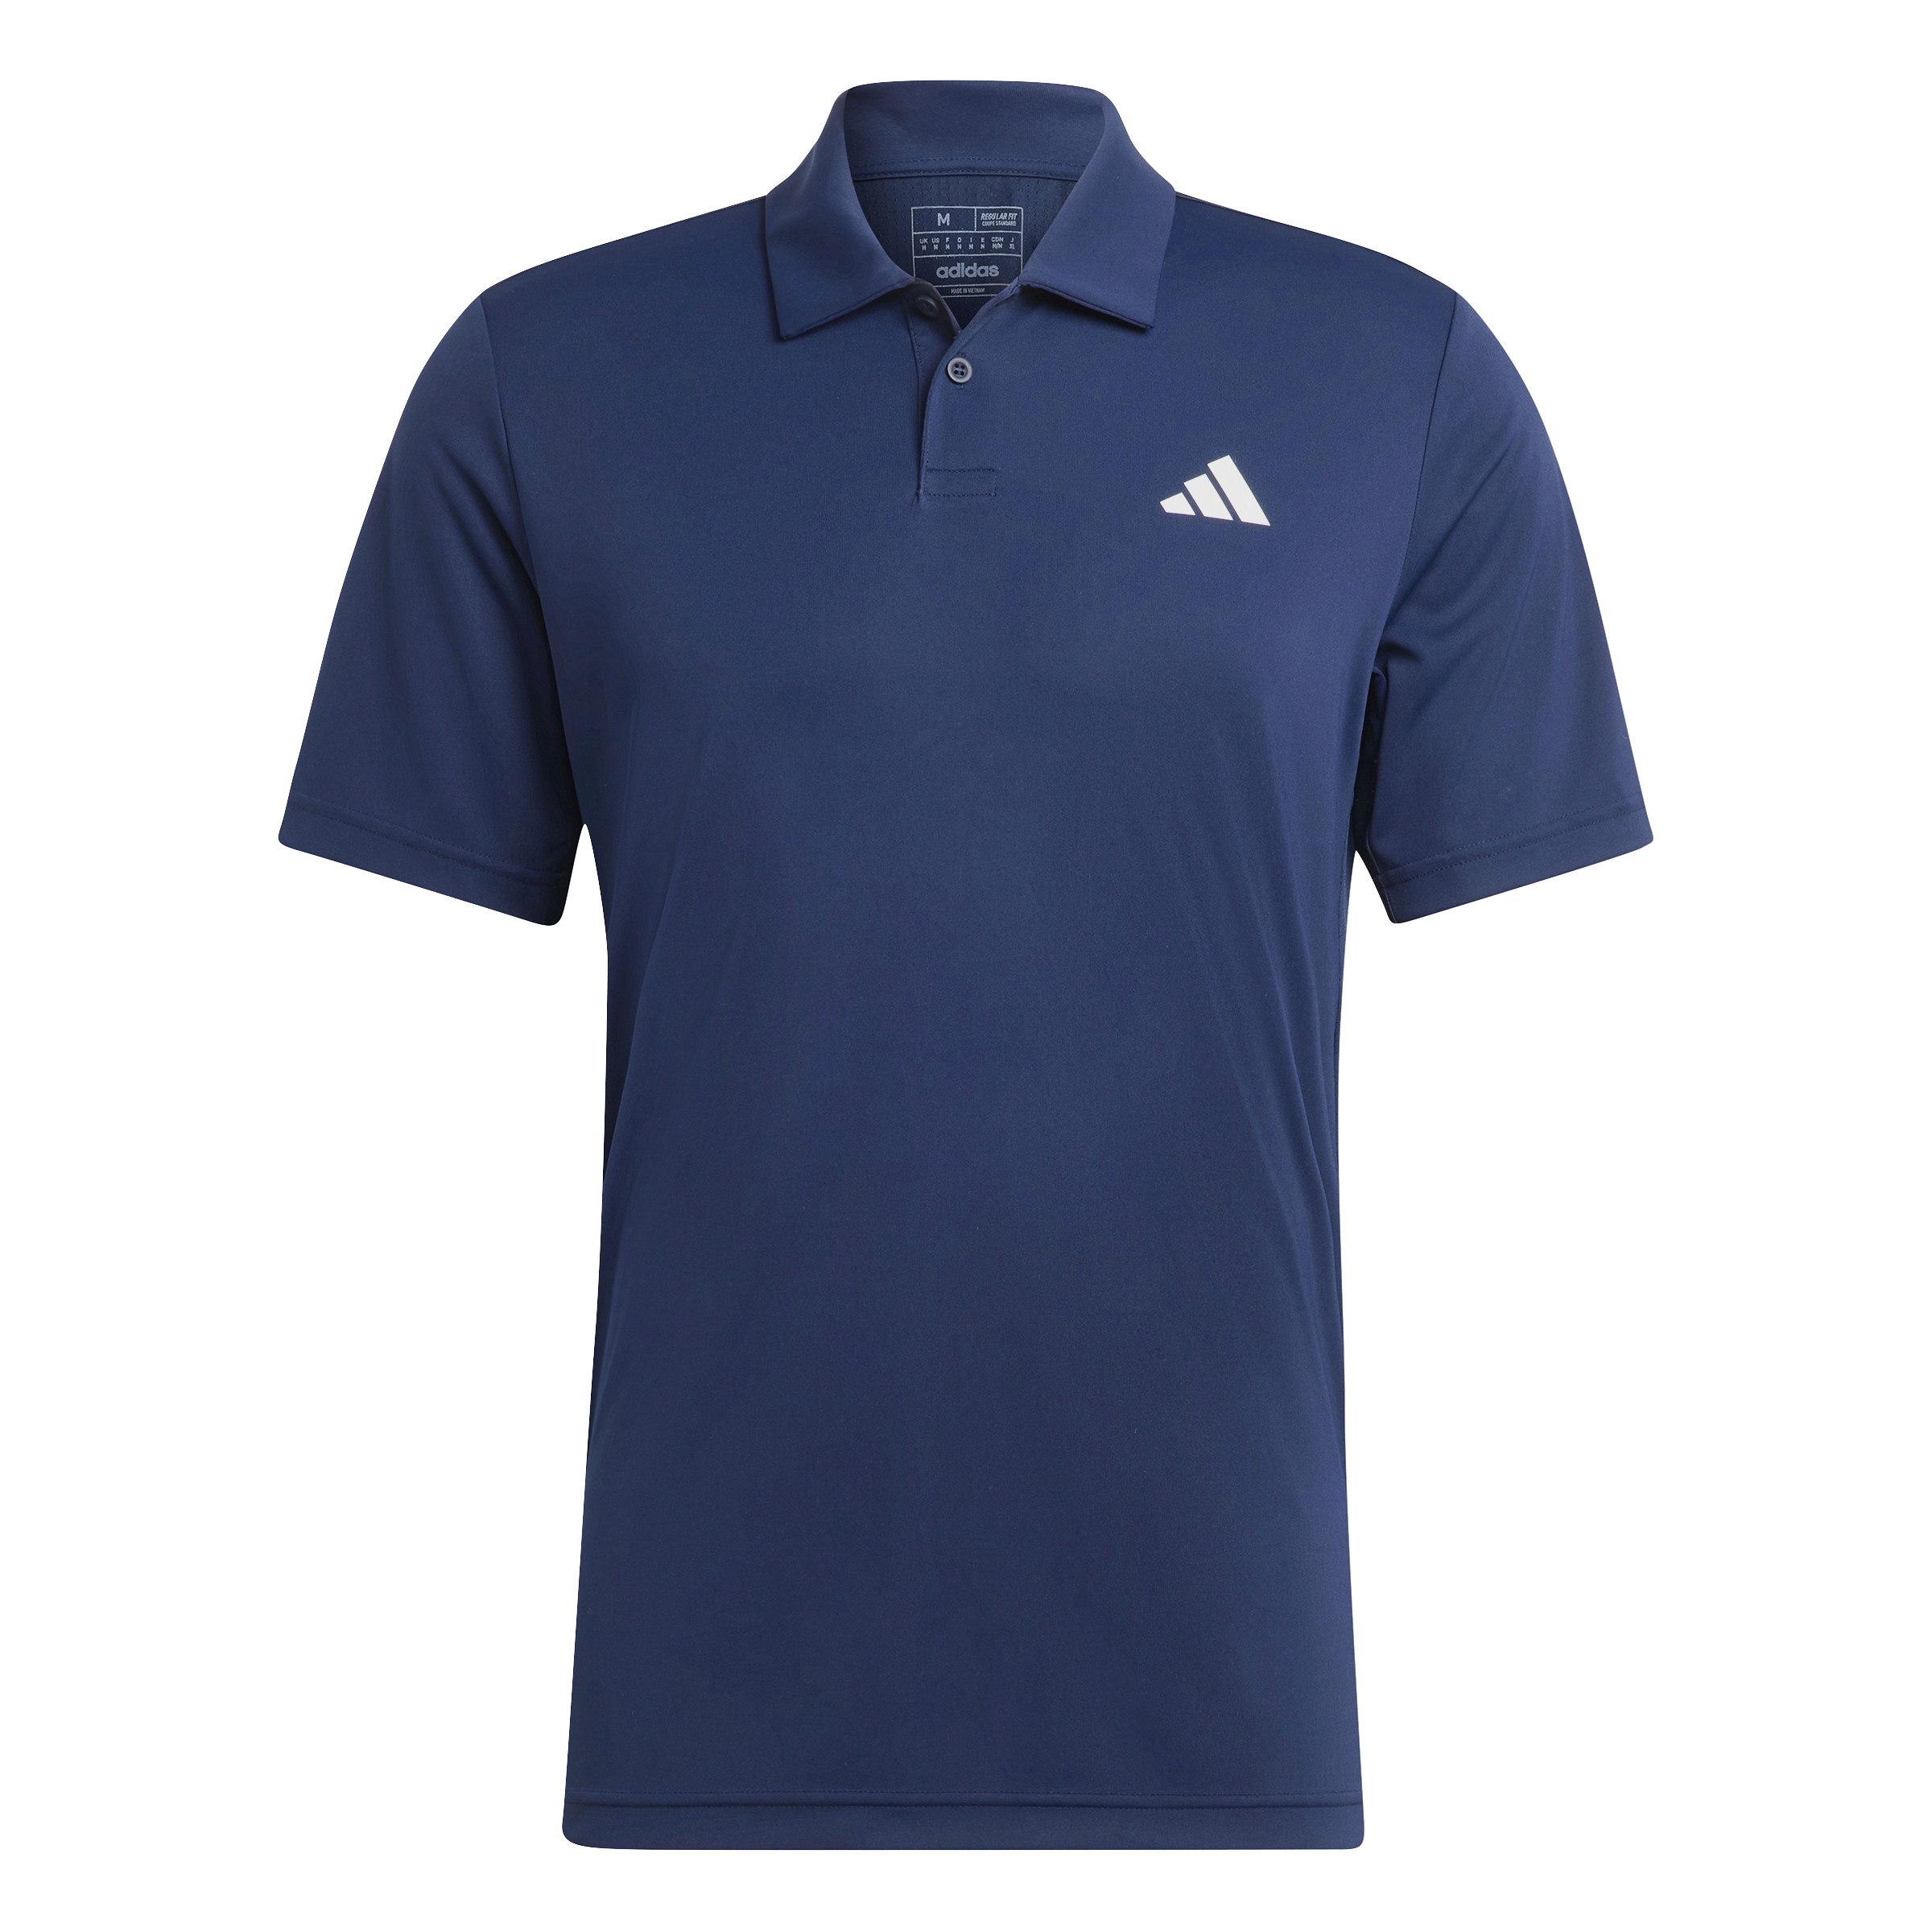 Adidas Club Poloshirt (Marineblau)